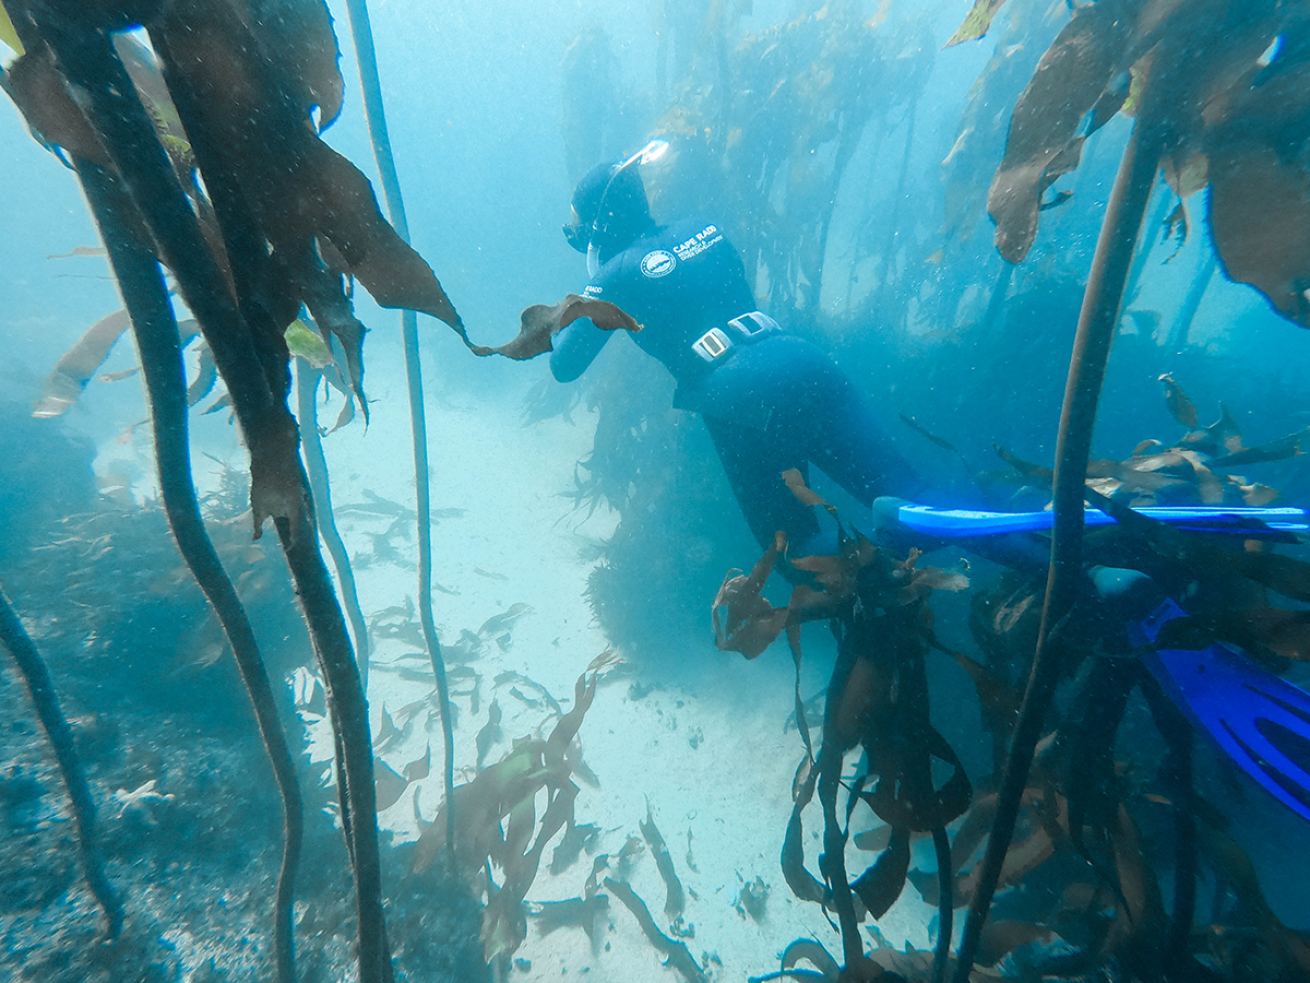 Kelp freediver